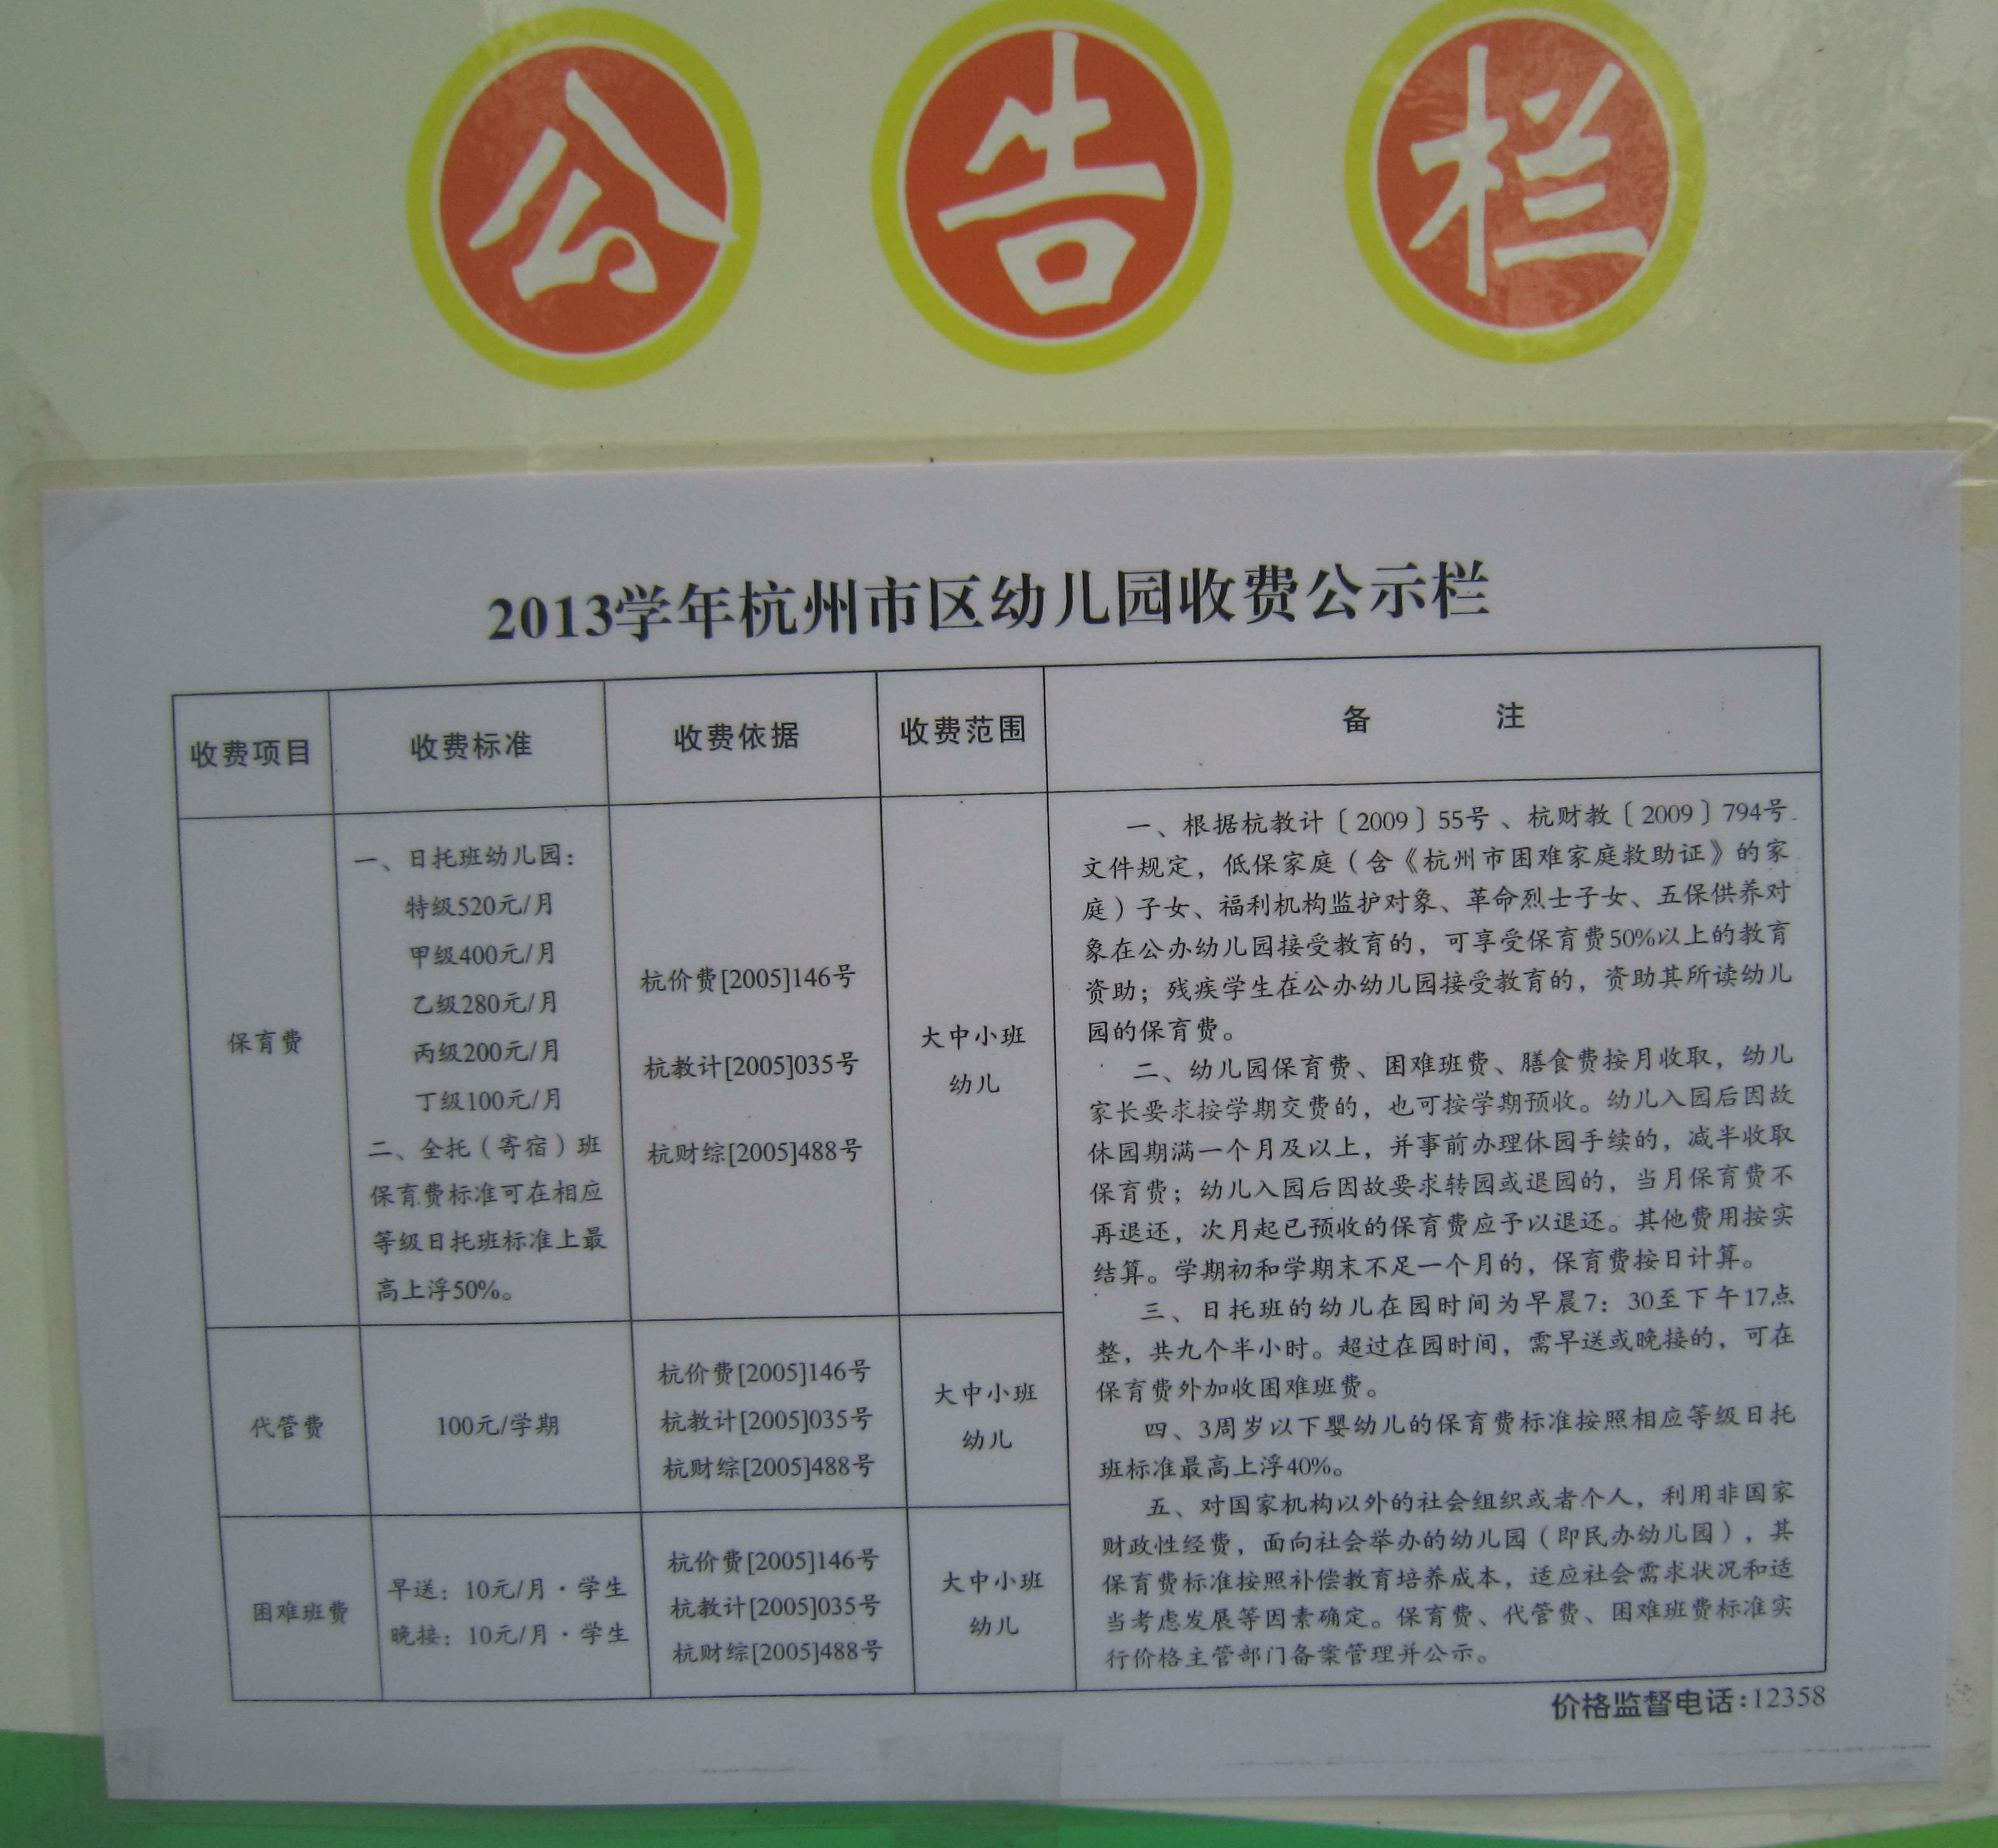 2013学年杭州市区幼儿园收费公示栏